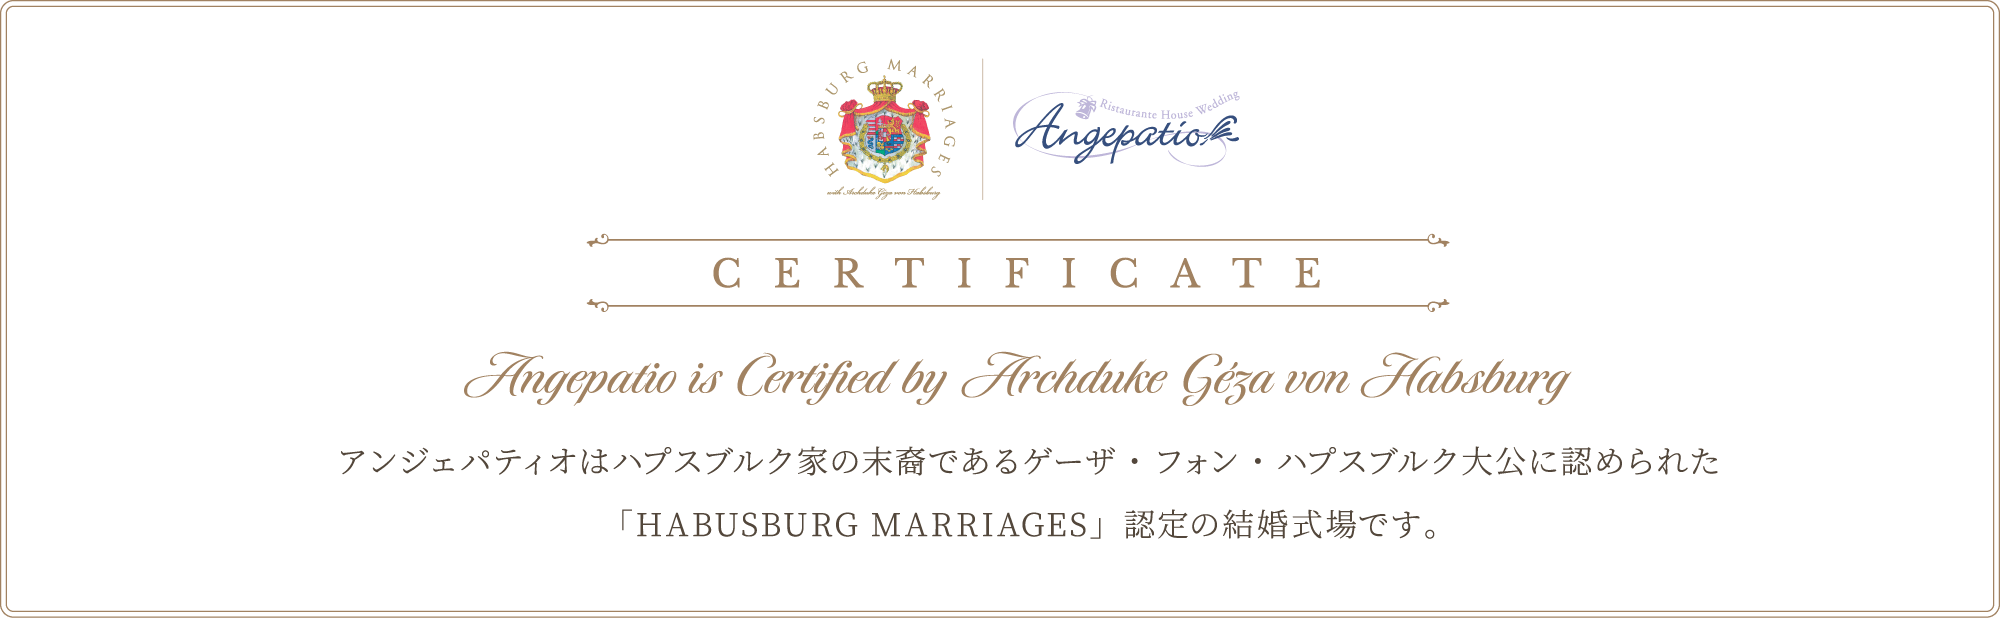 habsburg_certificate_pc